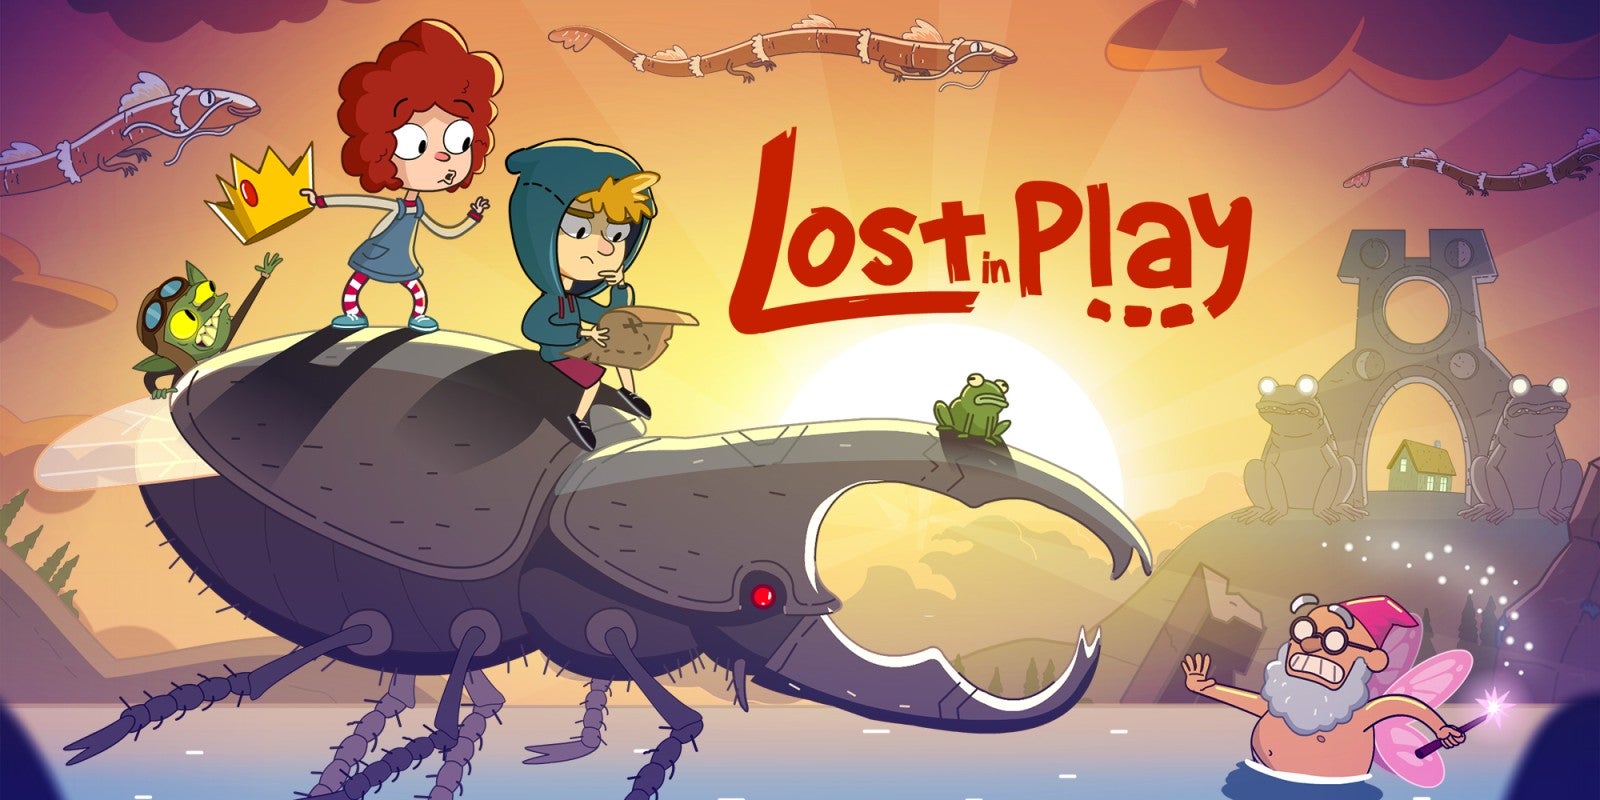 Immagine di Lost in Play: sospesi tra sogno, realtà e fantasia